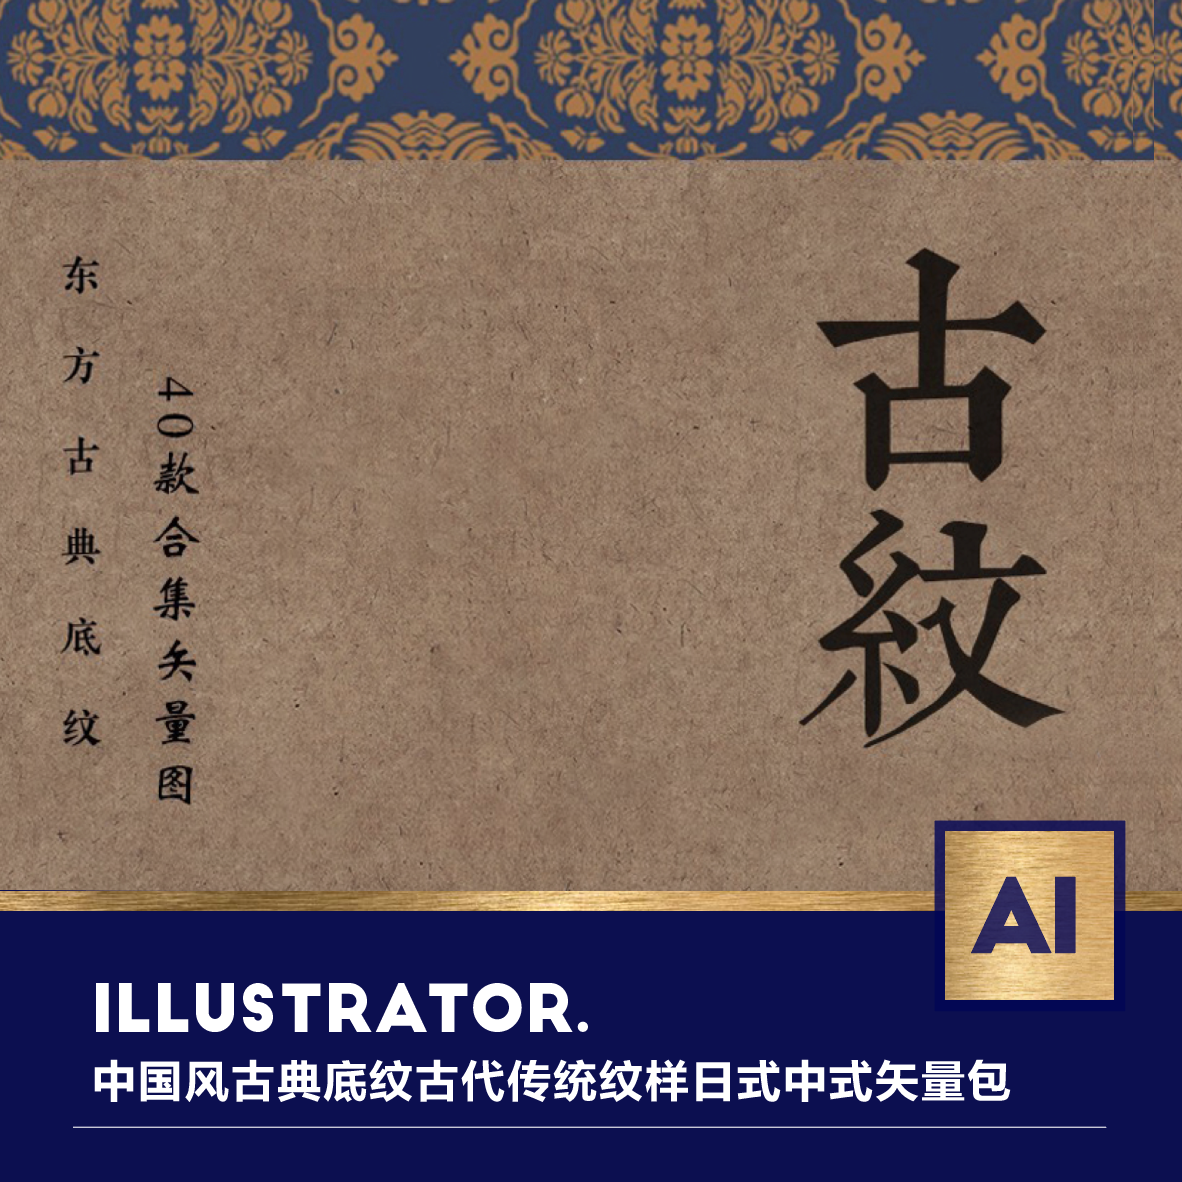 中国风古典底纹古代传统纹样日式中式矢量包装设计ai背景图案素材